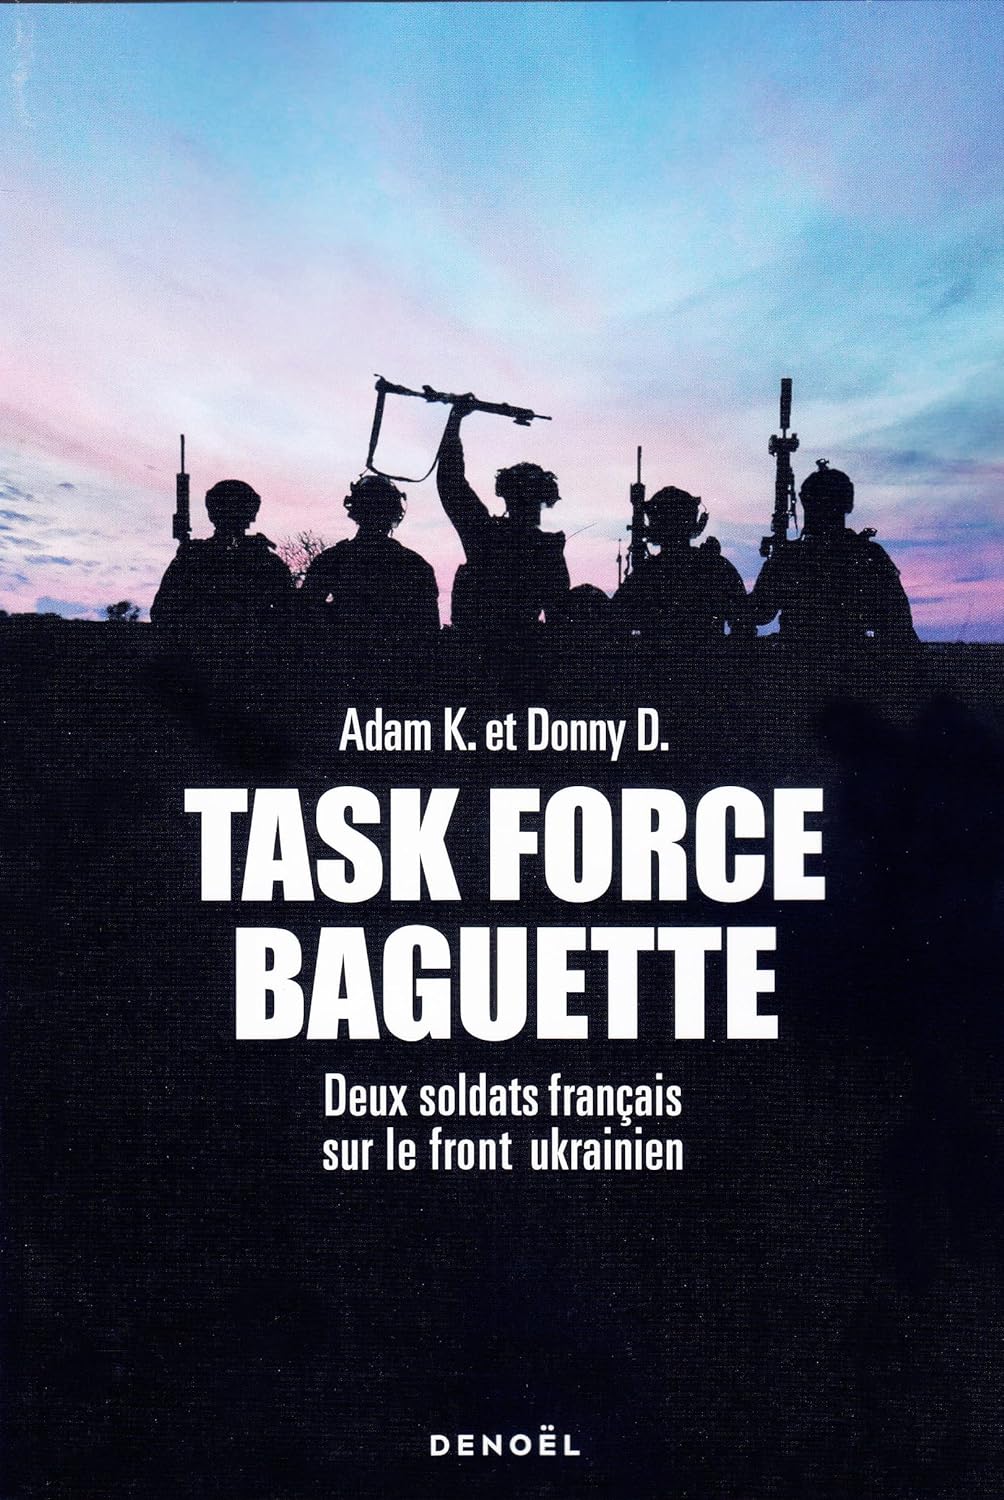 Nicolas Quénel, Adam K, Donny D: Task force baguette (français language, denoël)